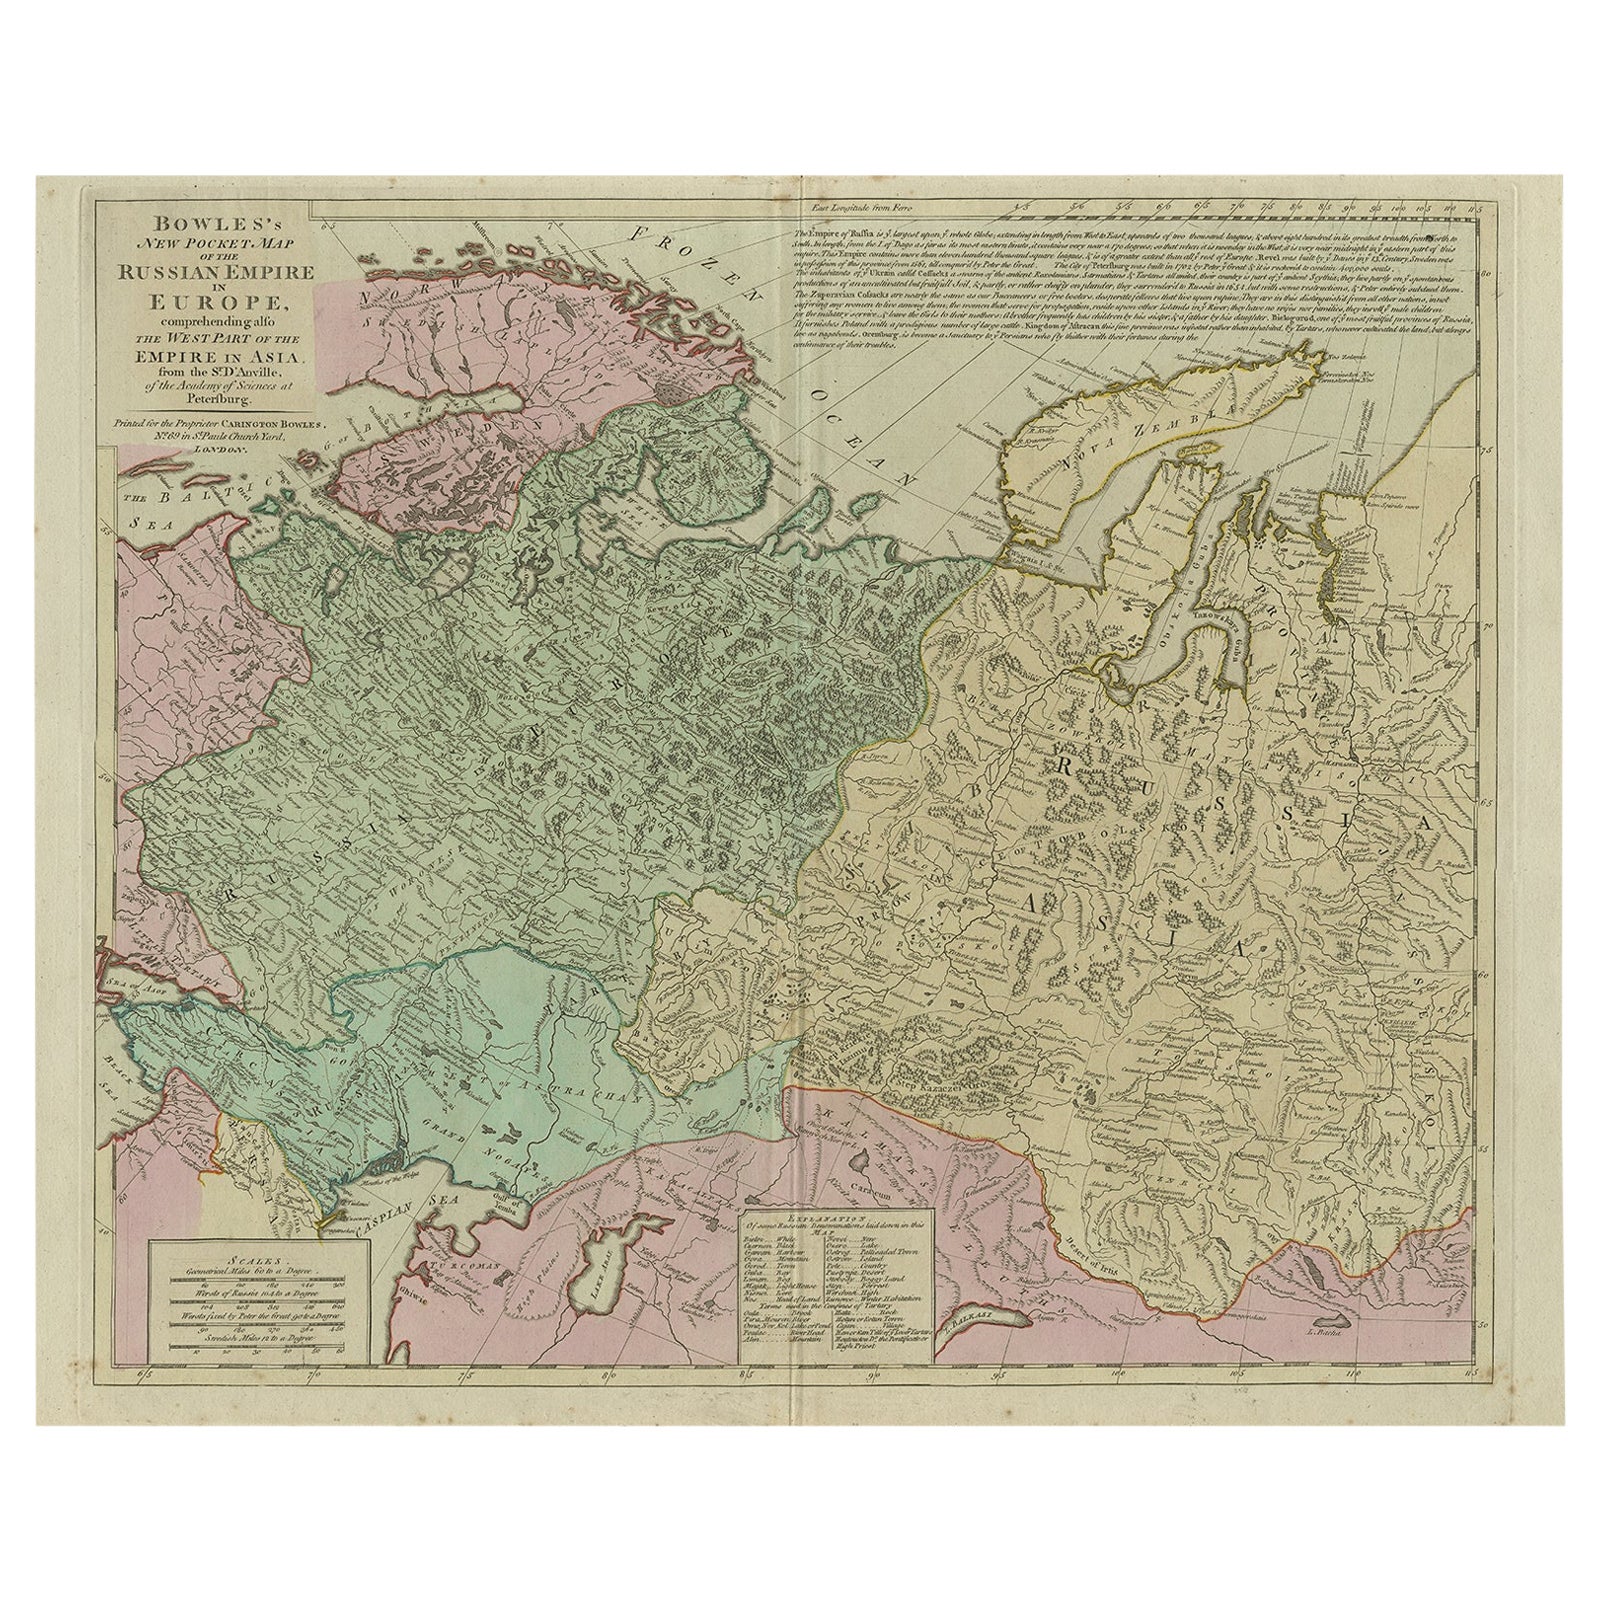 Antike Karte des russischen Kaiserreichs in Europa, ca. 1780